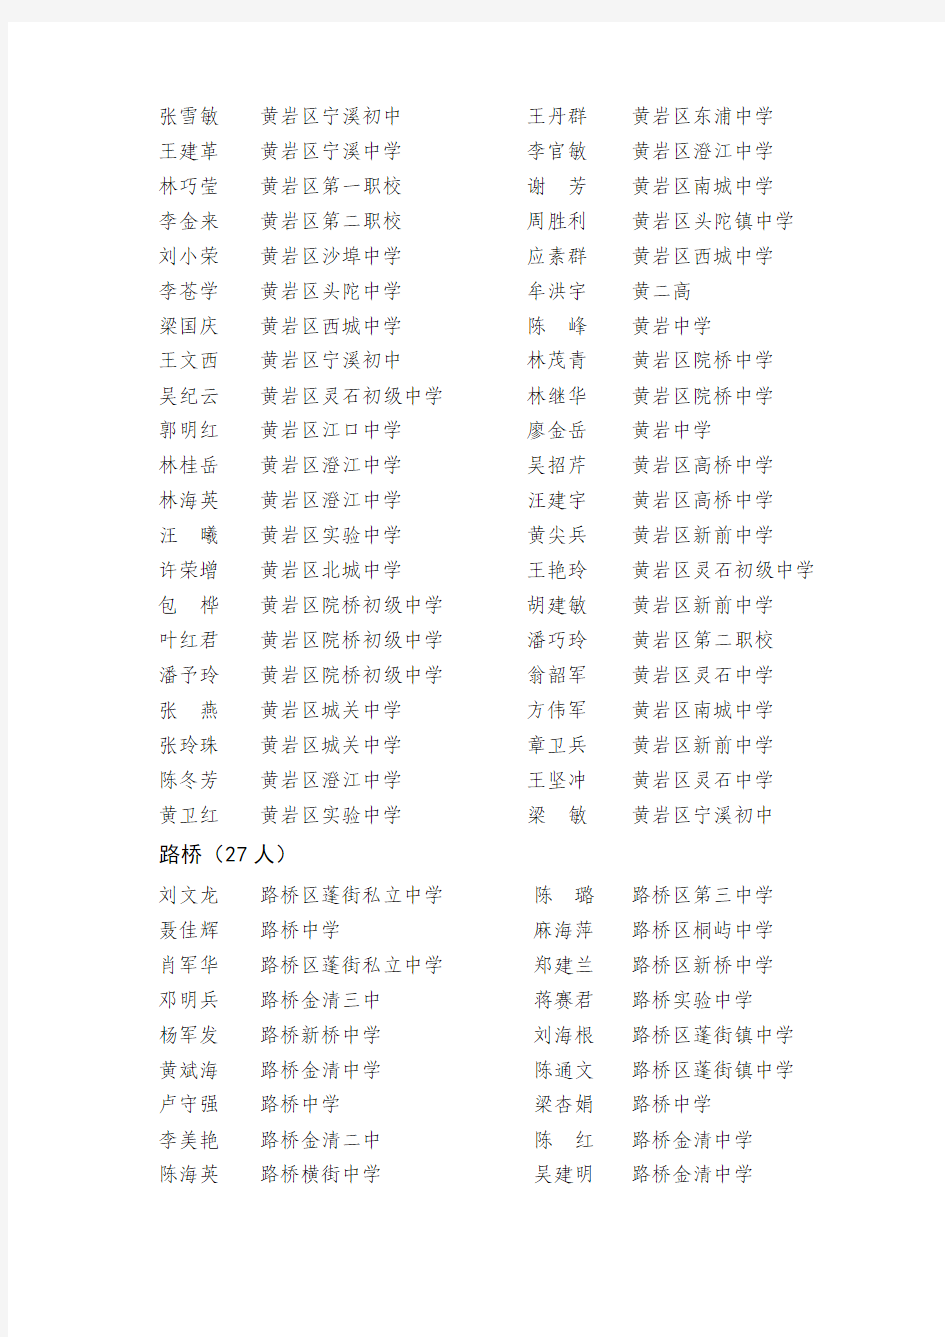 台州市具有中学高级教师资格人员名单(452人)